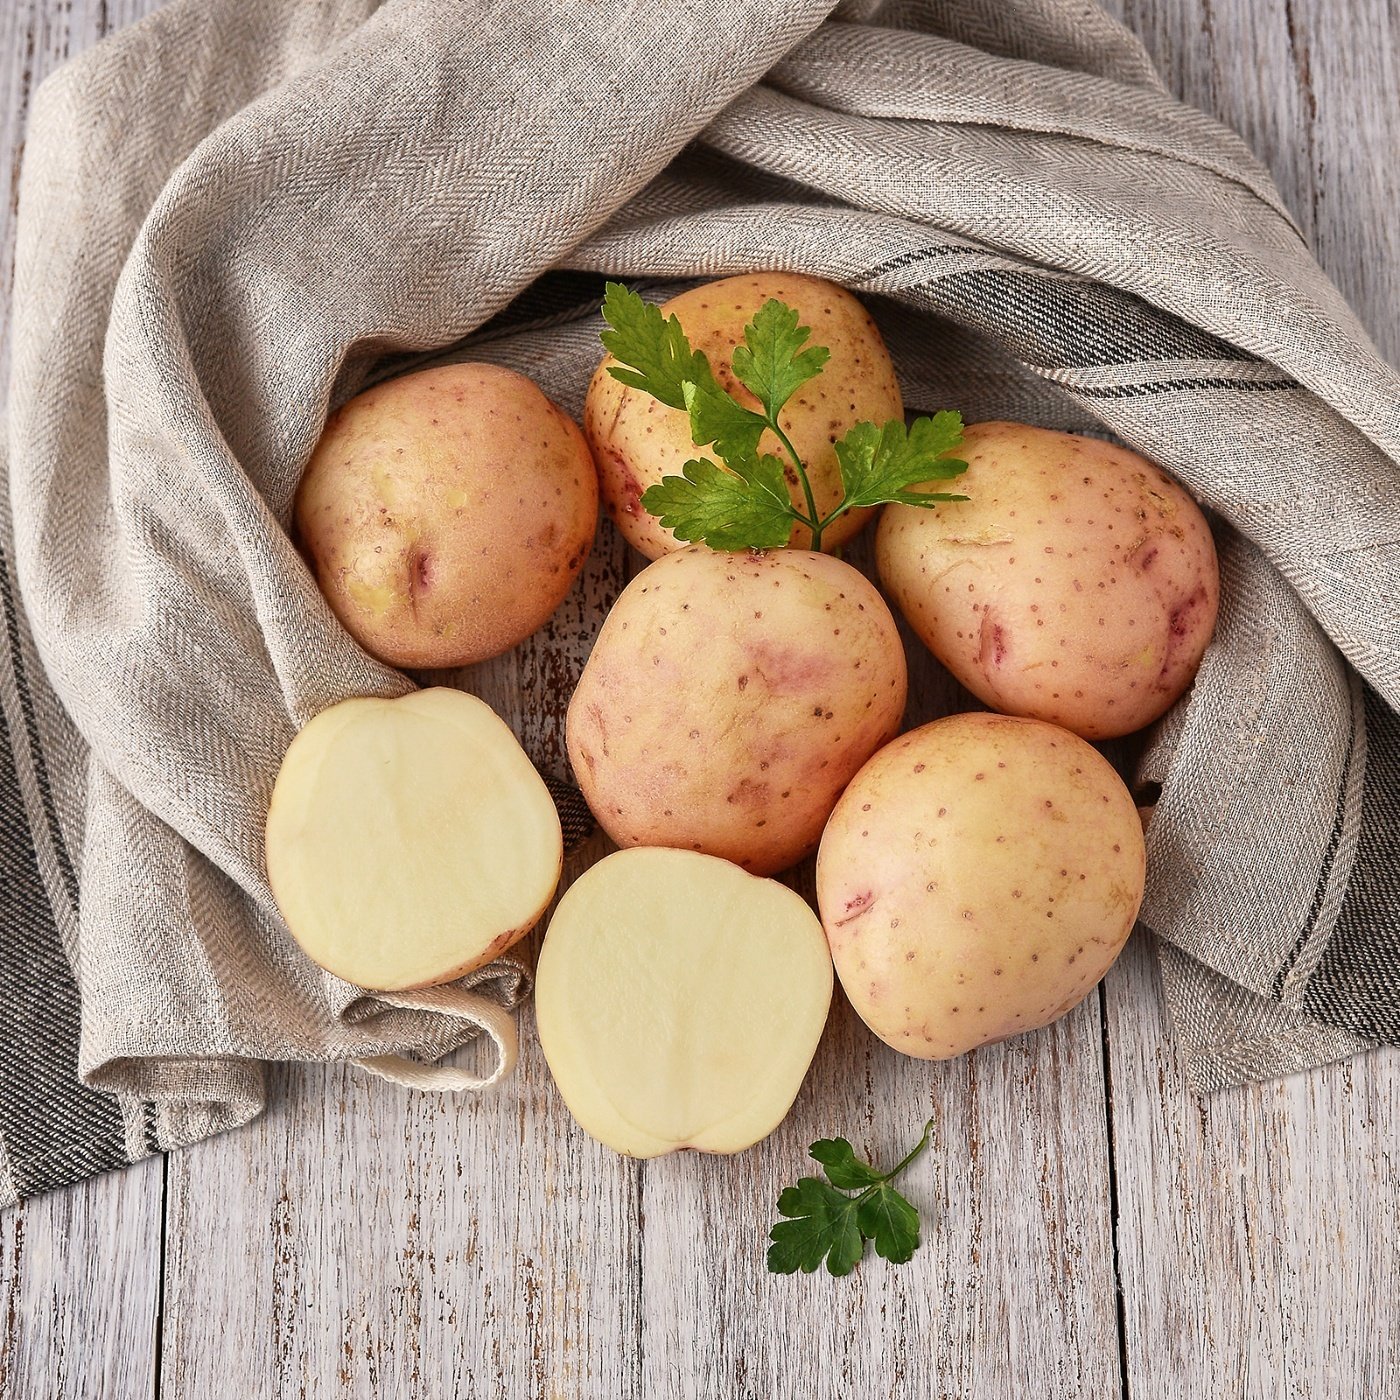 Картофель Синеглазка. Сорт картофеля Синеглазка. Семена картофеля Синеглазка. Подготовка картофеля,корнеплодов.